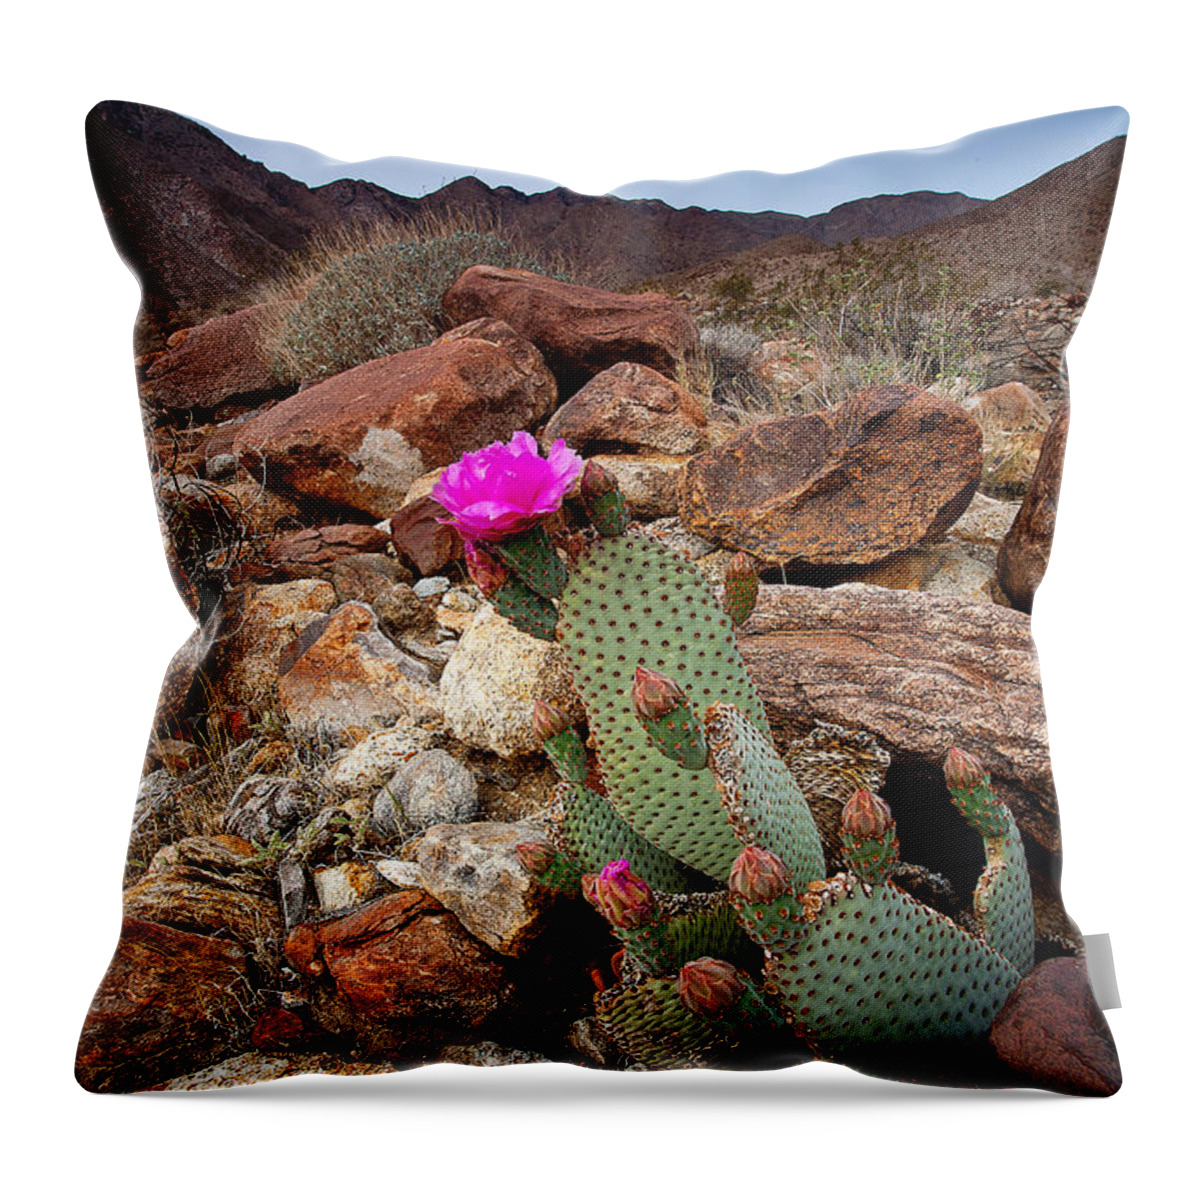 Anza-borrego Desert Throw Pillow featuring the photograph Desert BeaverTail by Peter Tellone